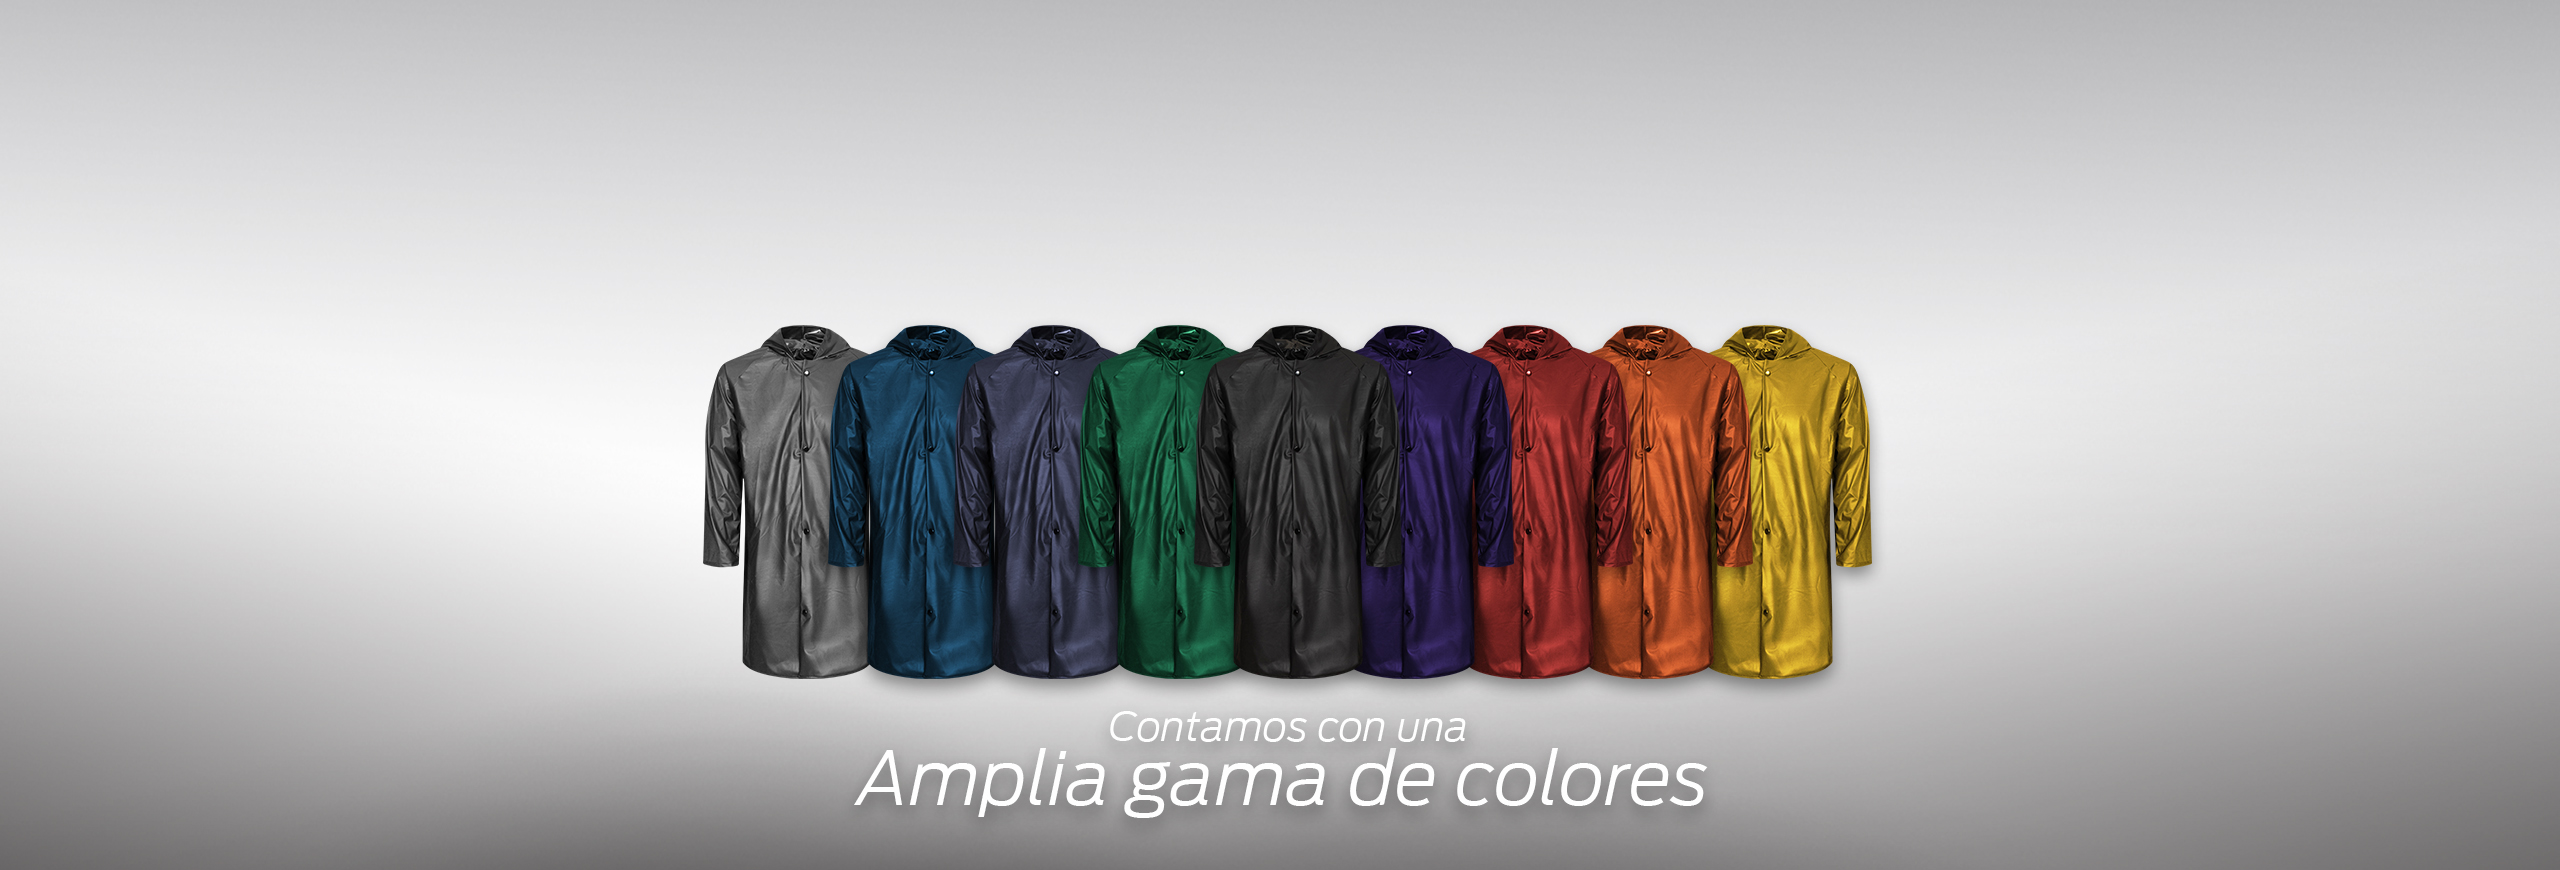 Rompevientos-colores-Banners-Web-Site-Inicio